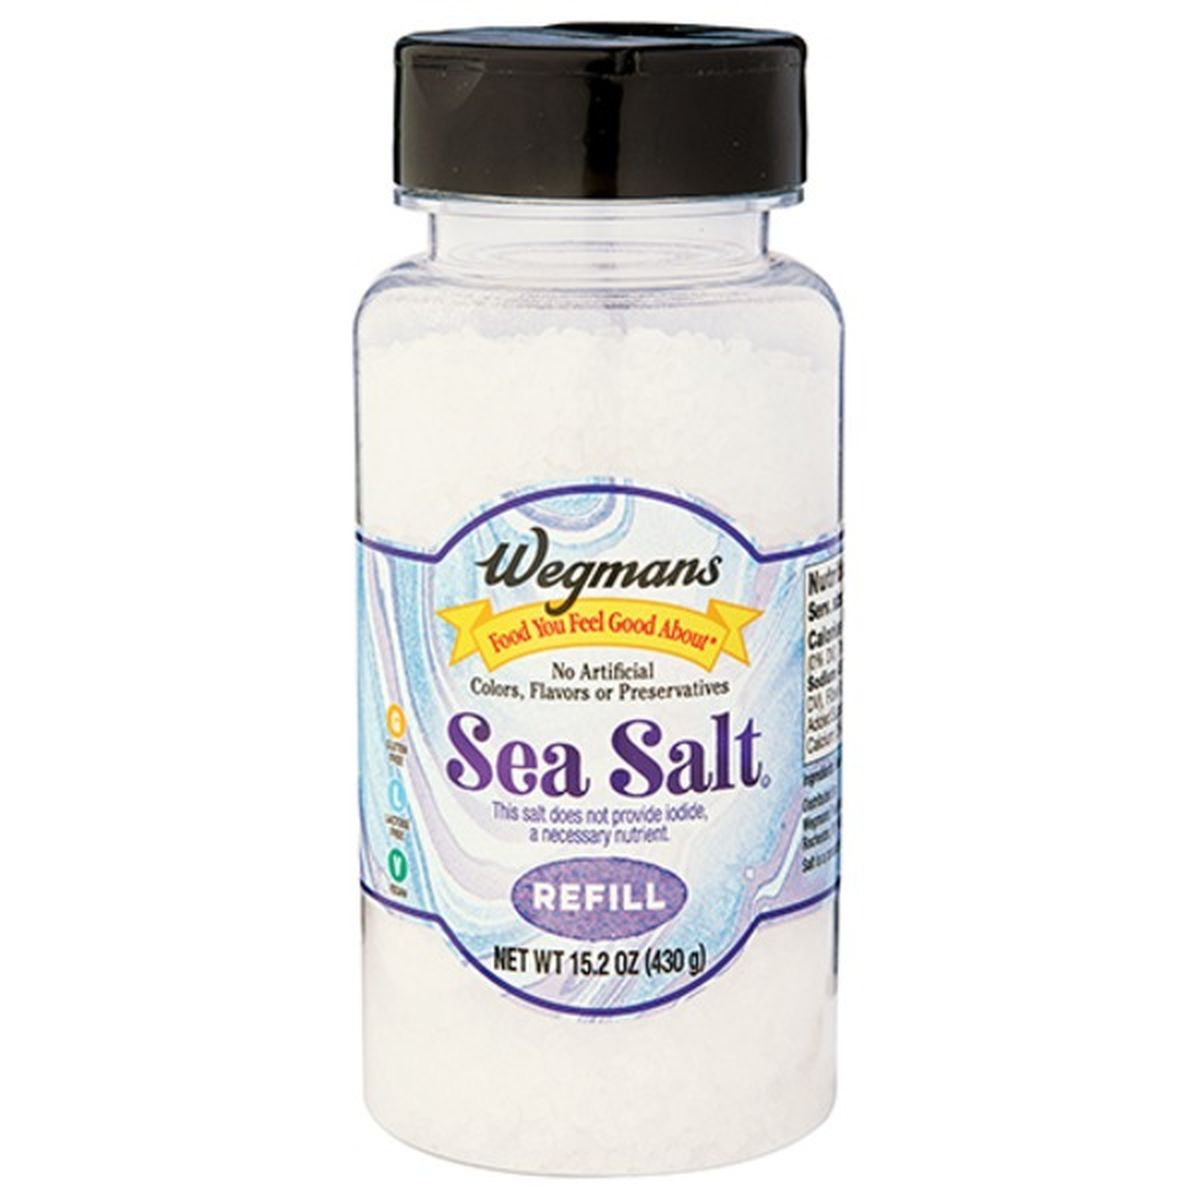 Calories in Wegmans Sea Salt Refill